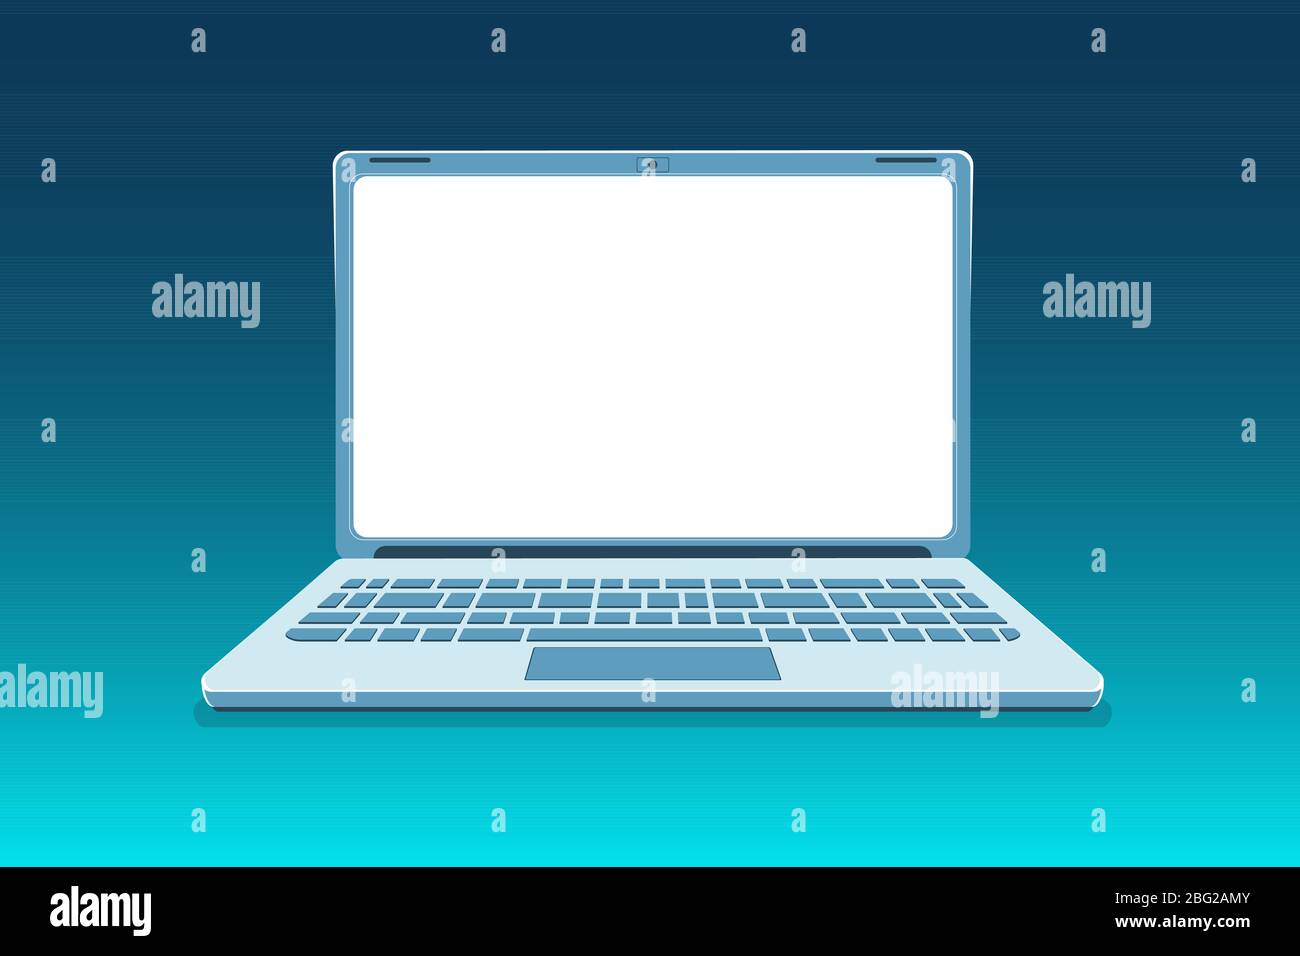 Offene Laptop Mockup Vorderansicht auf modernem blauen Hintergrund. Technologie Vektor-Illustration rahmenlos mit leerem Bildschirm. Raumüberwachung kopieren. Leichtes, klares Rahmendesign. Vorlage für Computertechnologie. Stock Vektor